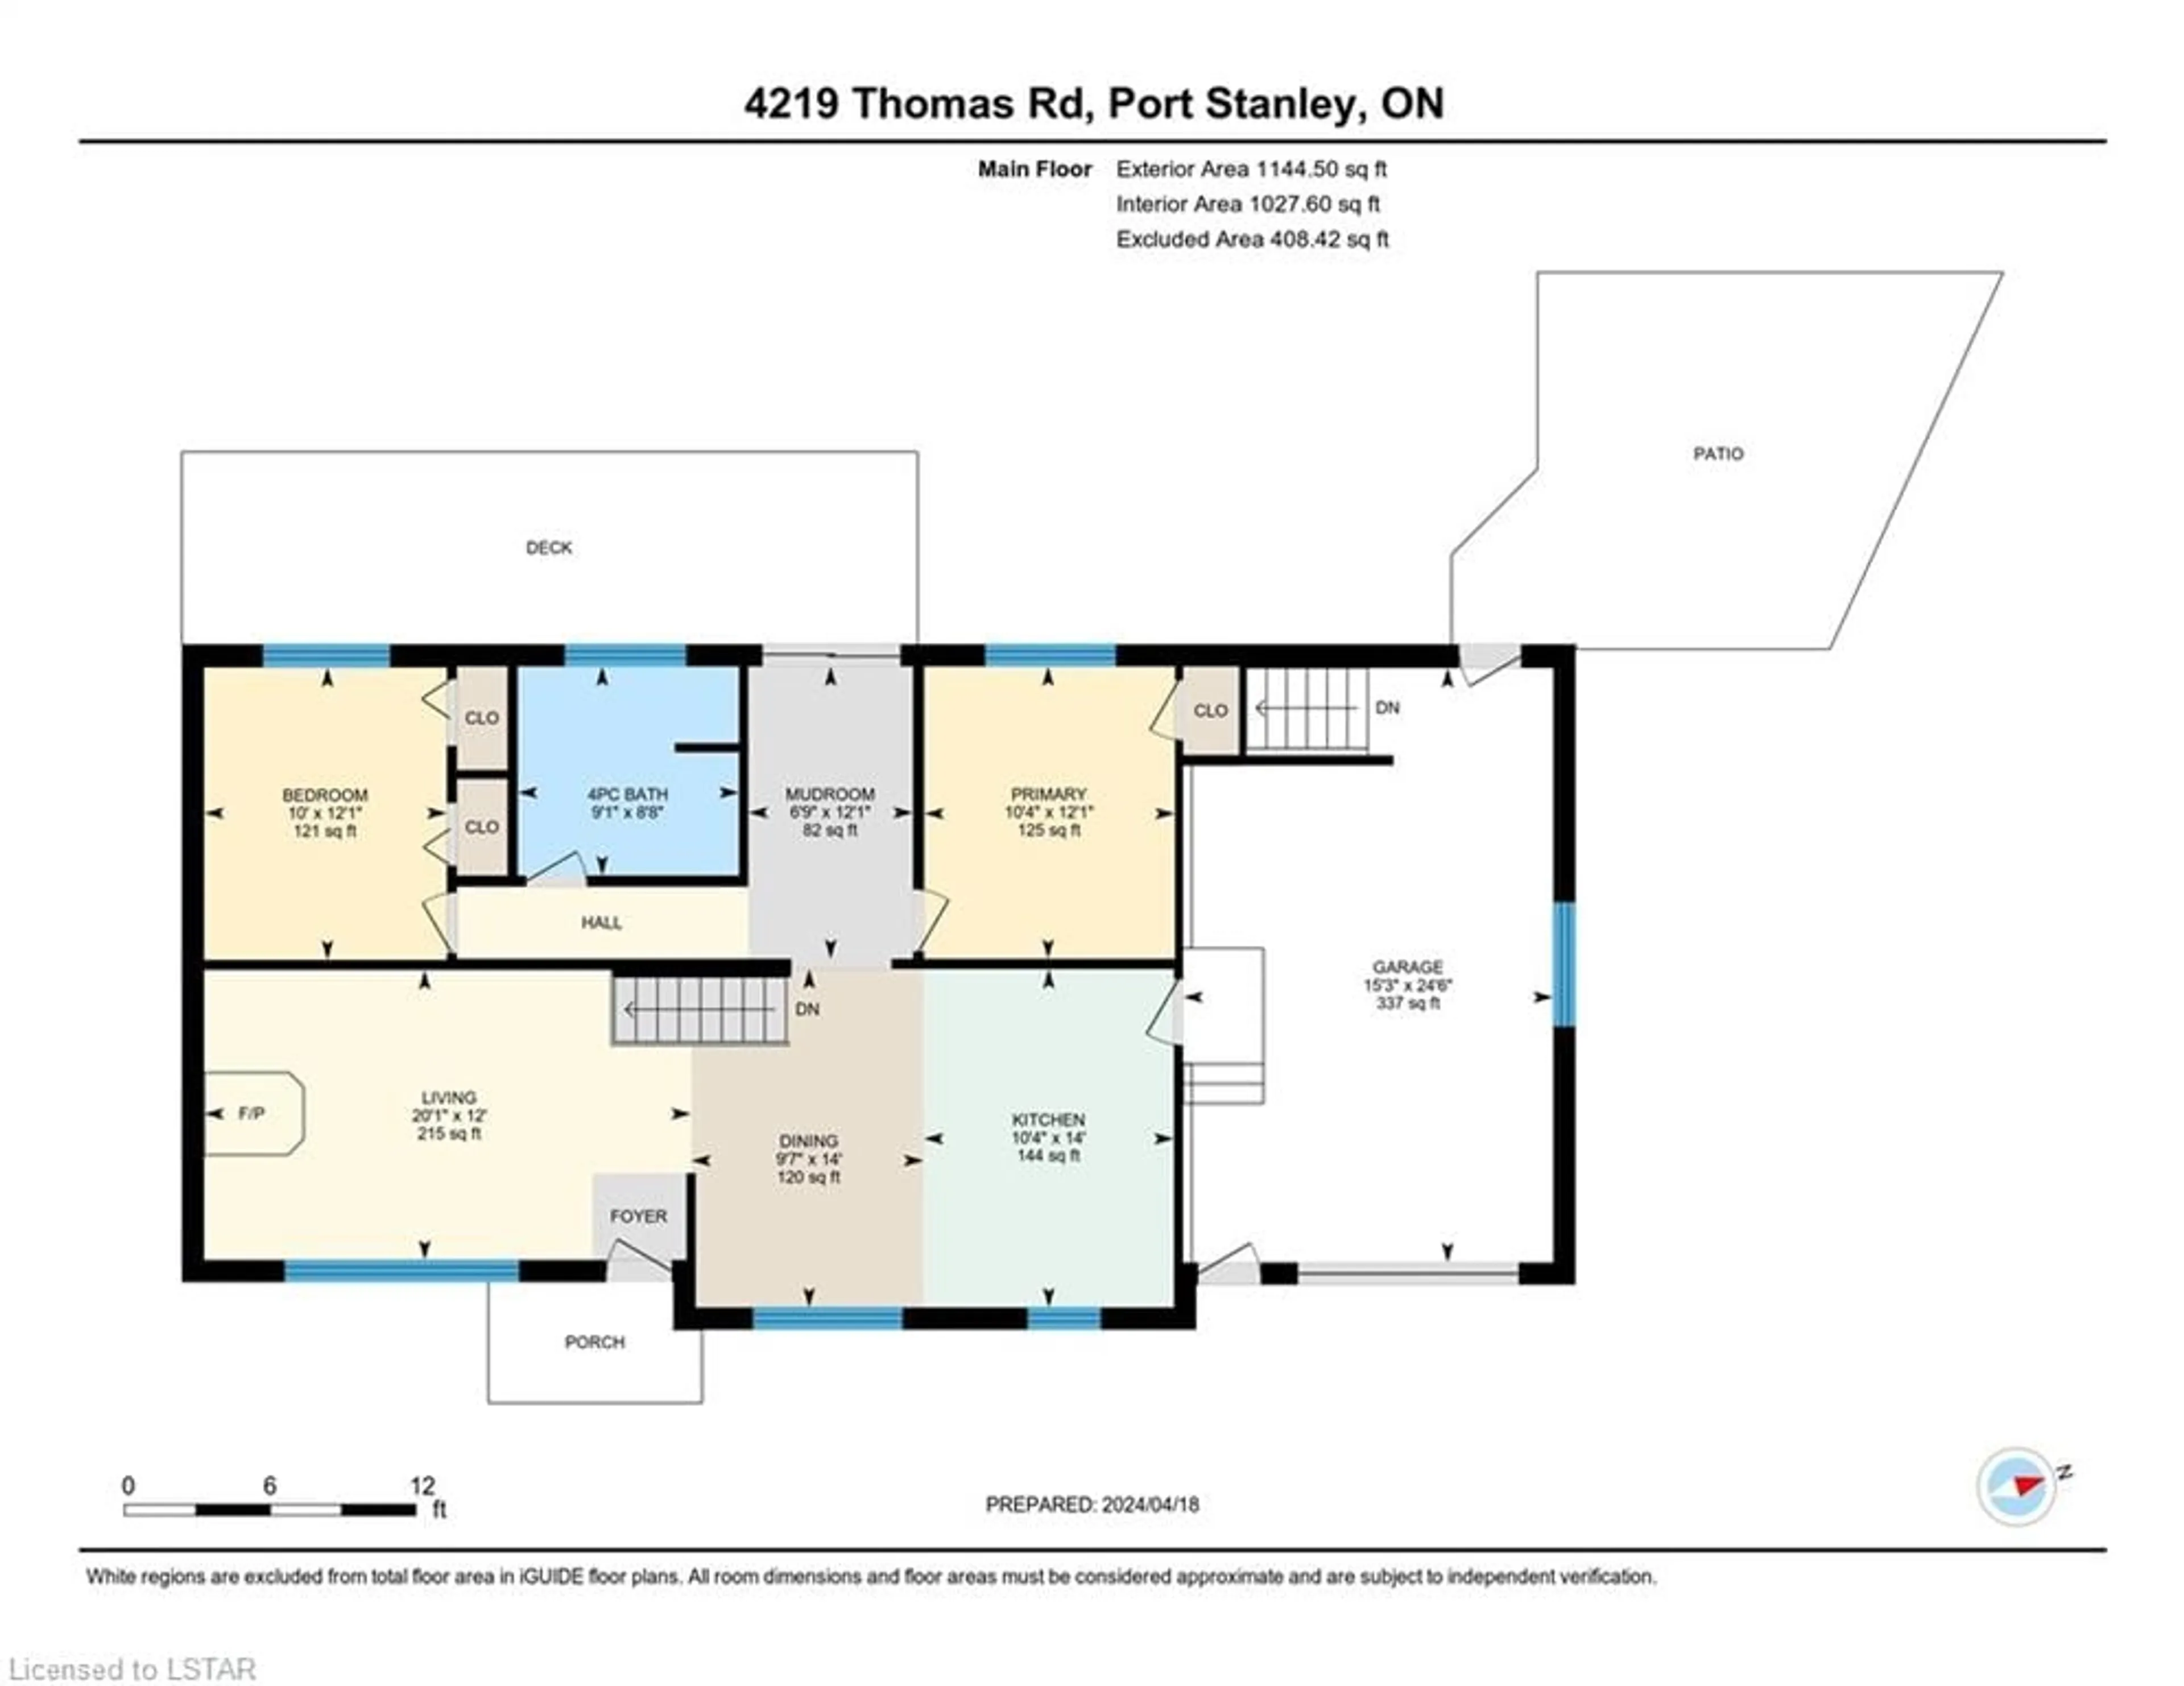 Floor plan for 4219 Thomas Road, Port Stanley Ontario N5L 1J2